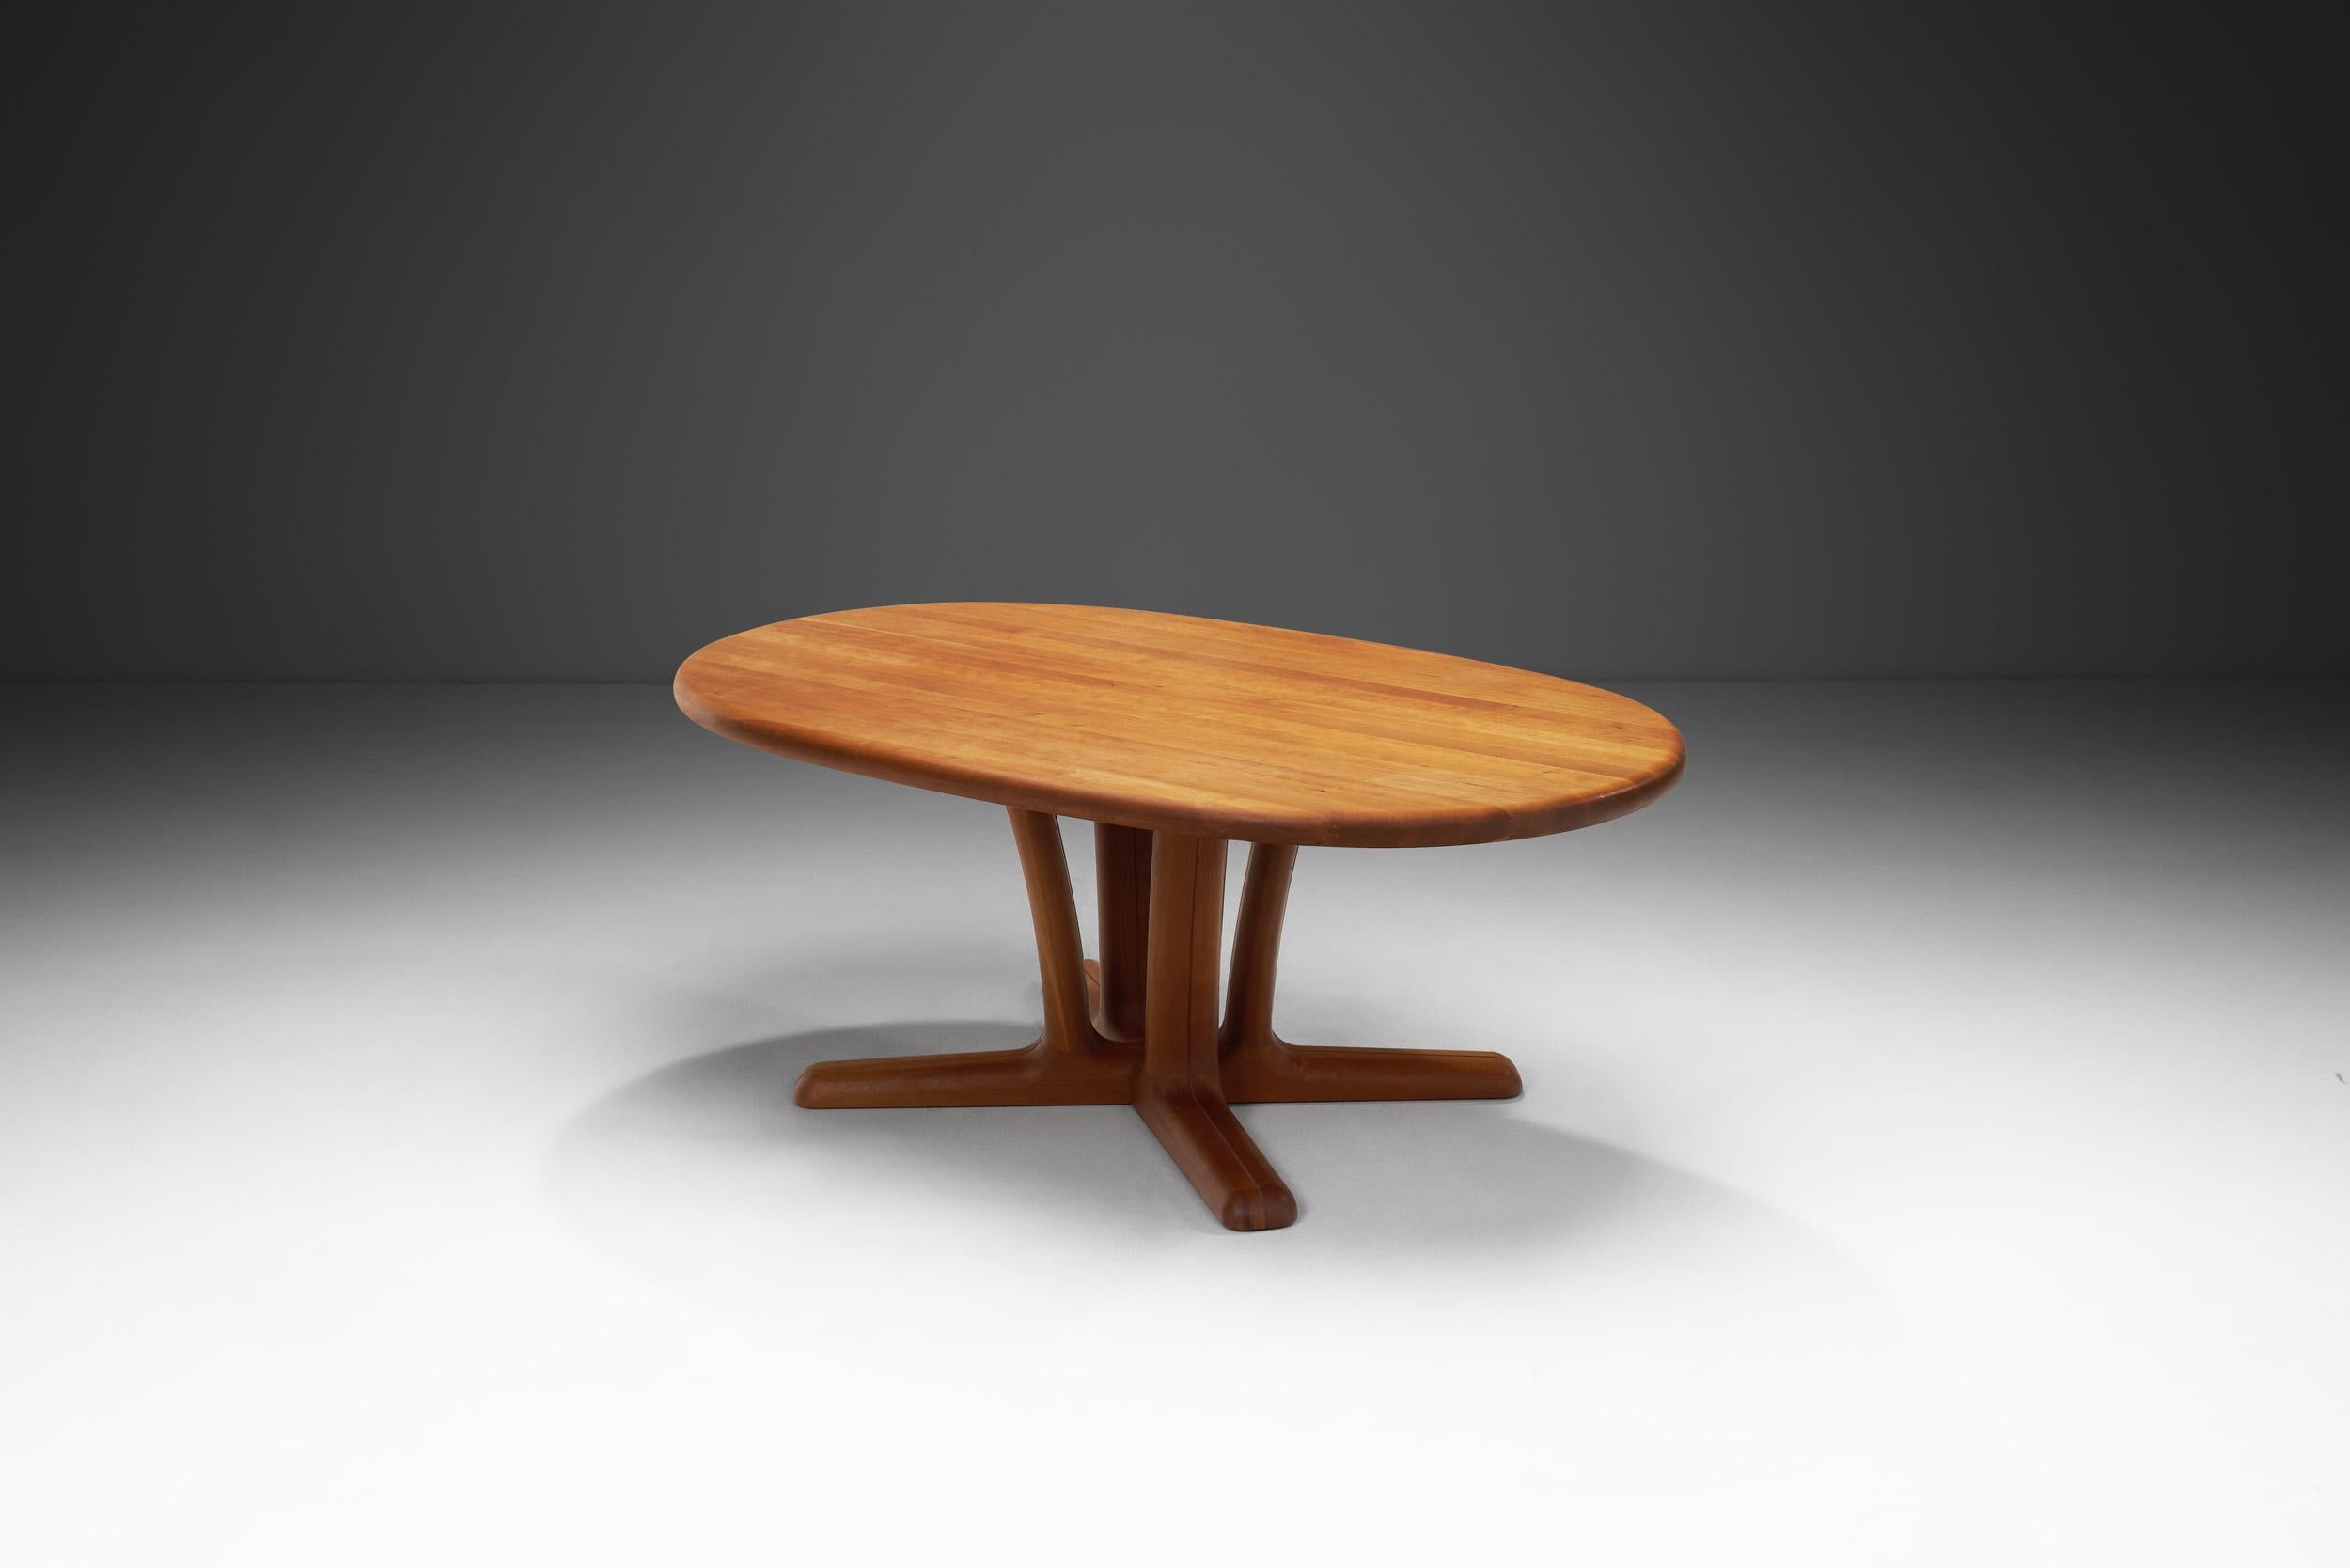 Des bois précieux et des finitions à la main définissent les pièces de mobilier fabriquées par l'entreprise danoise fondée en 1960, Dyrlund. Comme le montre cette table basse en teck massif, l'accent est mis sur la qualité de l'artisanat avec des